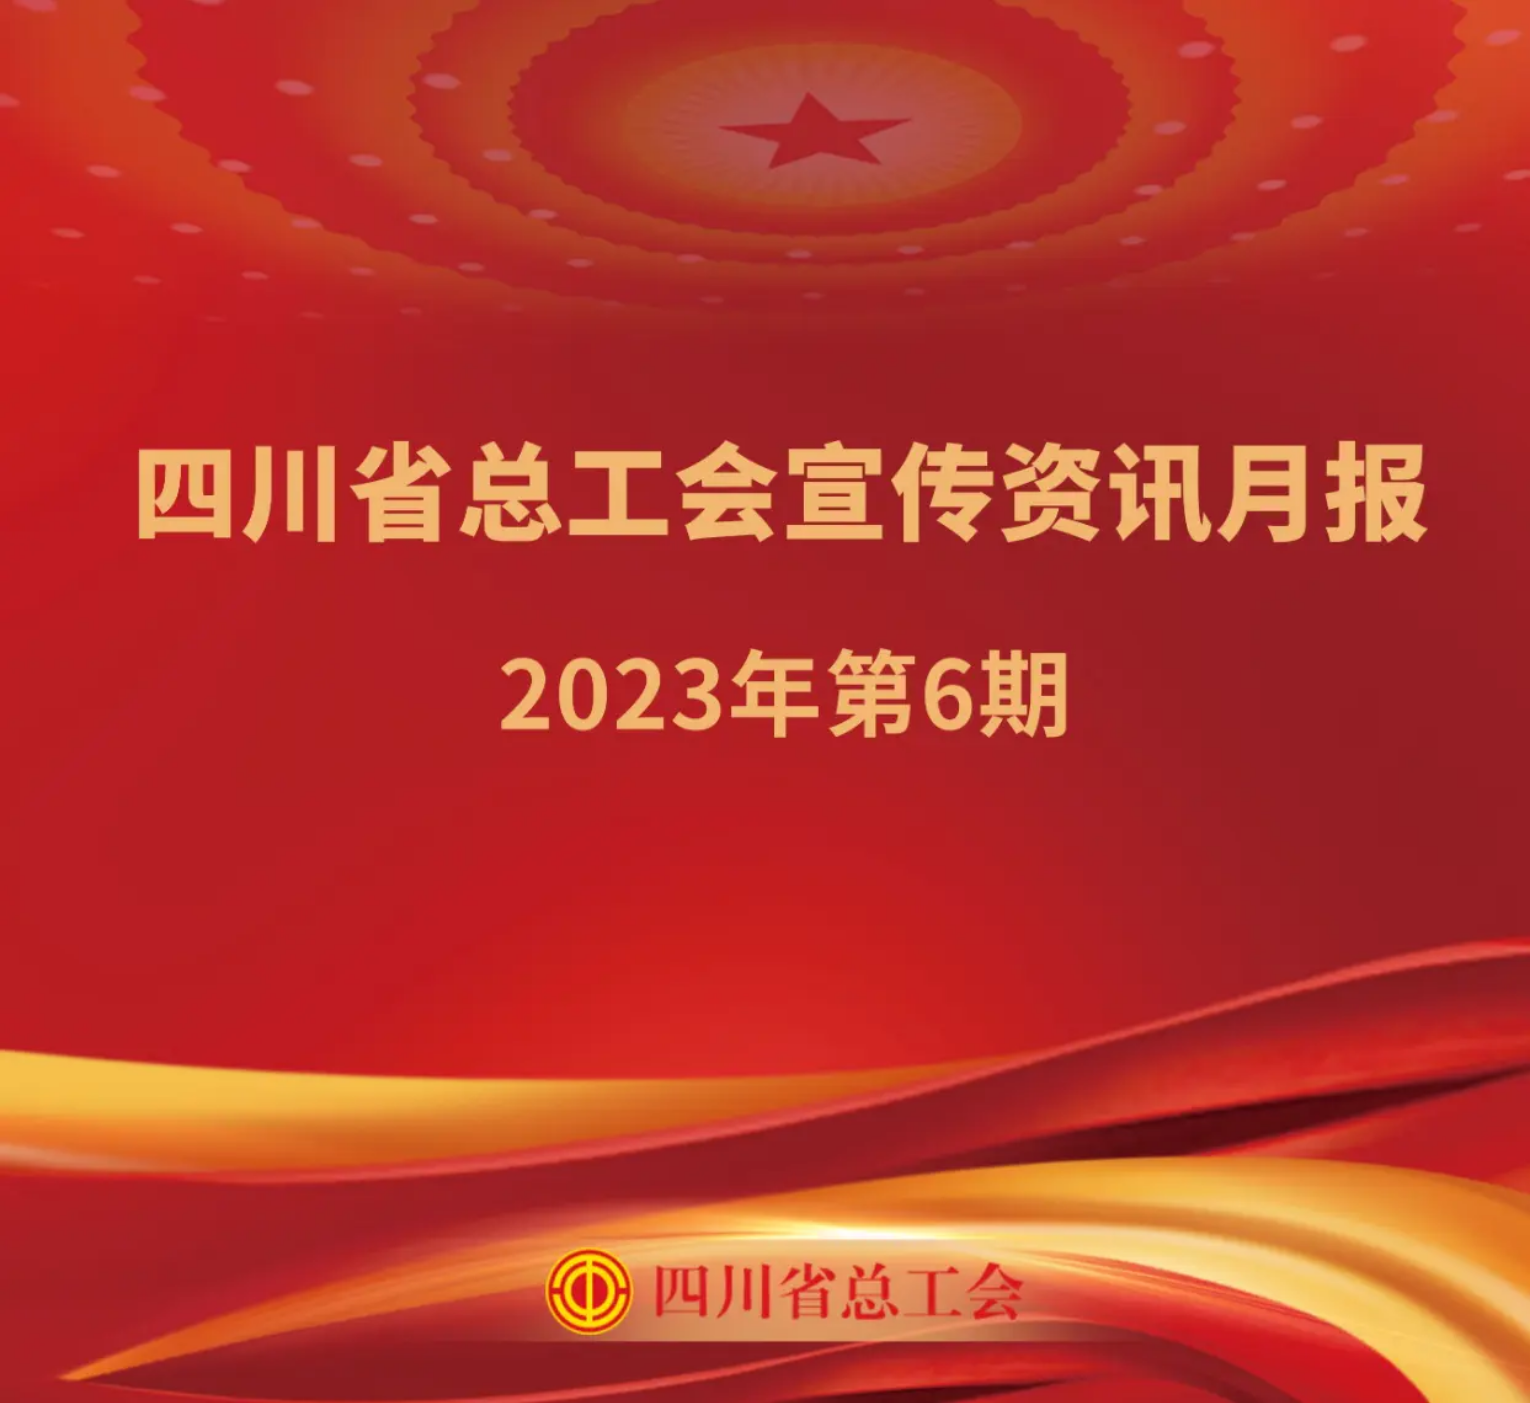 四川省总工会宣传资讯月报2023年第6期_装订本